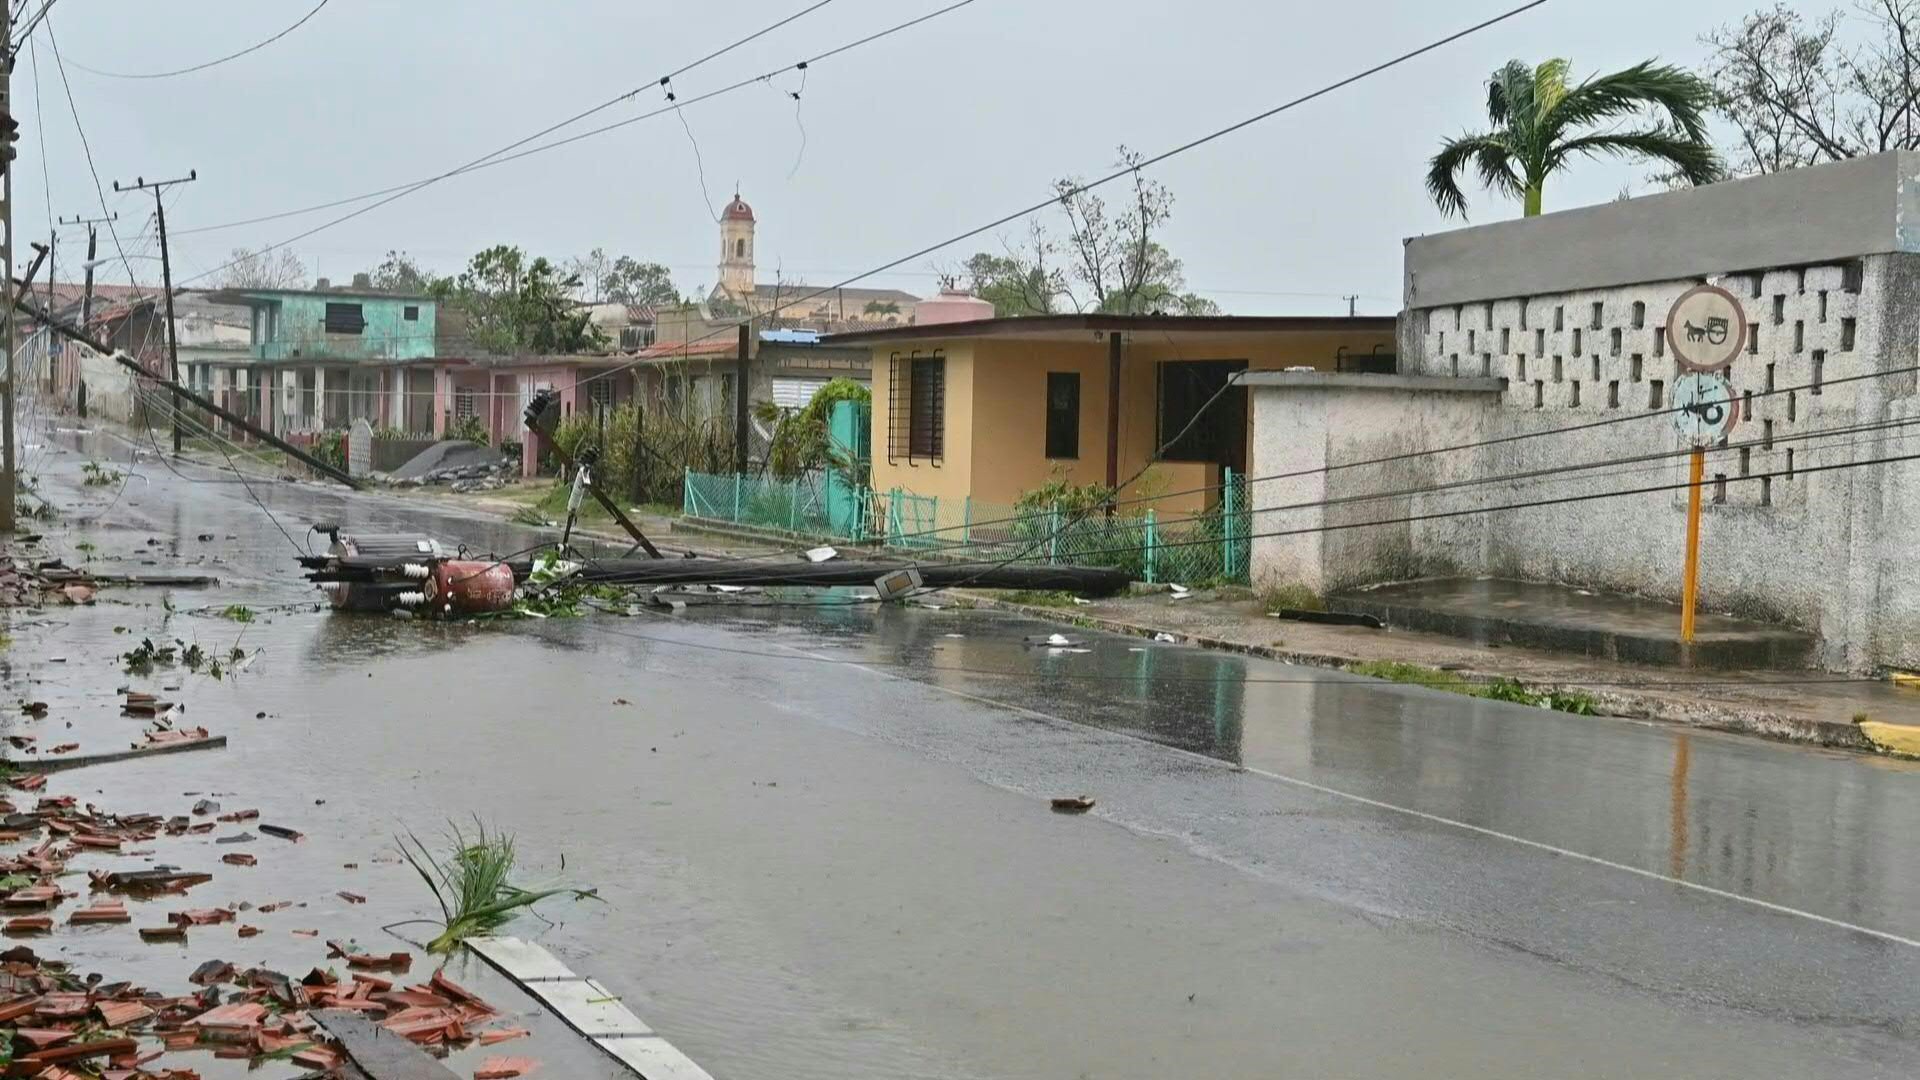 El poderoso huracán Ian atravesó desde la madrugada del martes el occidente de Cuba dejando daños, con árboles y líneas eléctricas derribados sin reporte de víctimas.